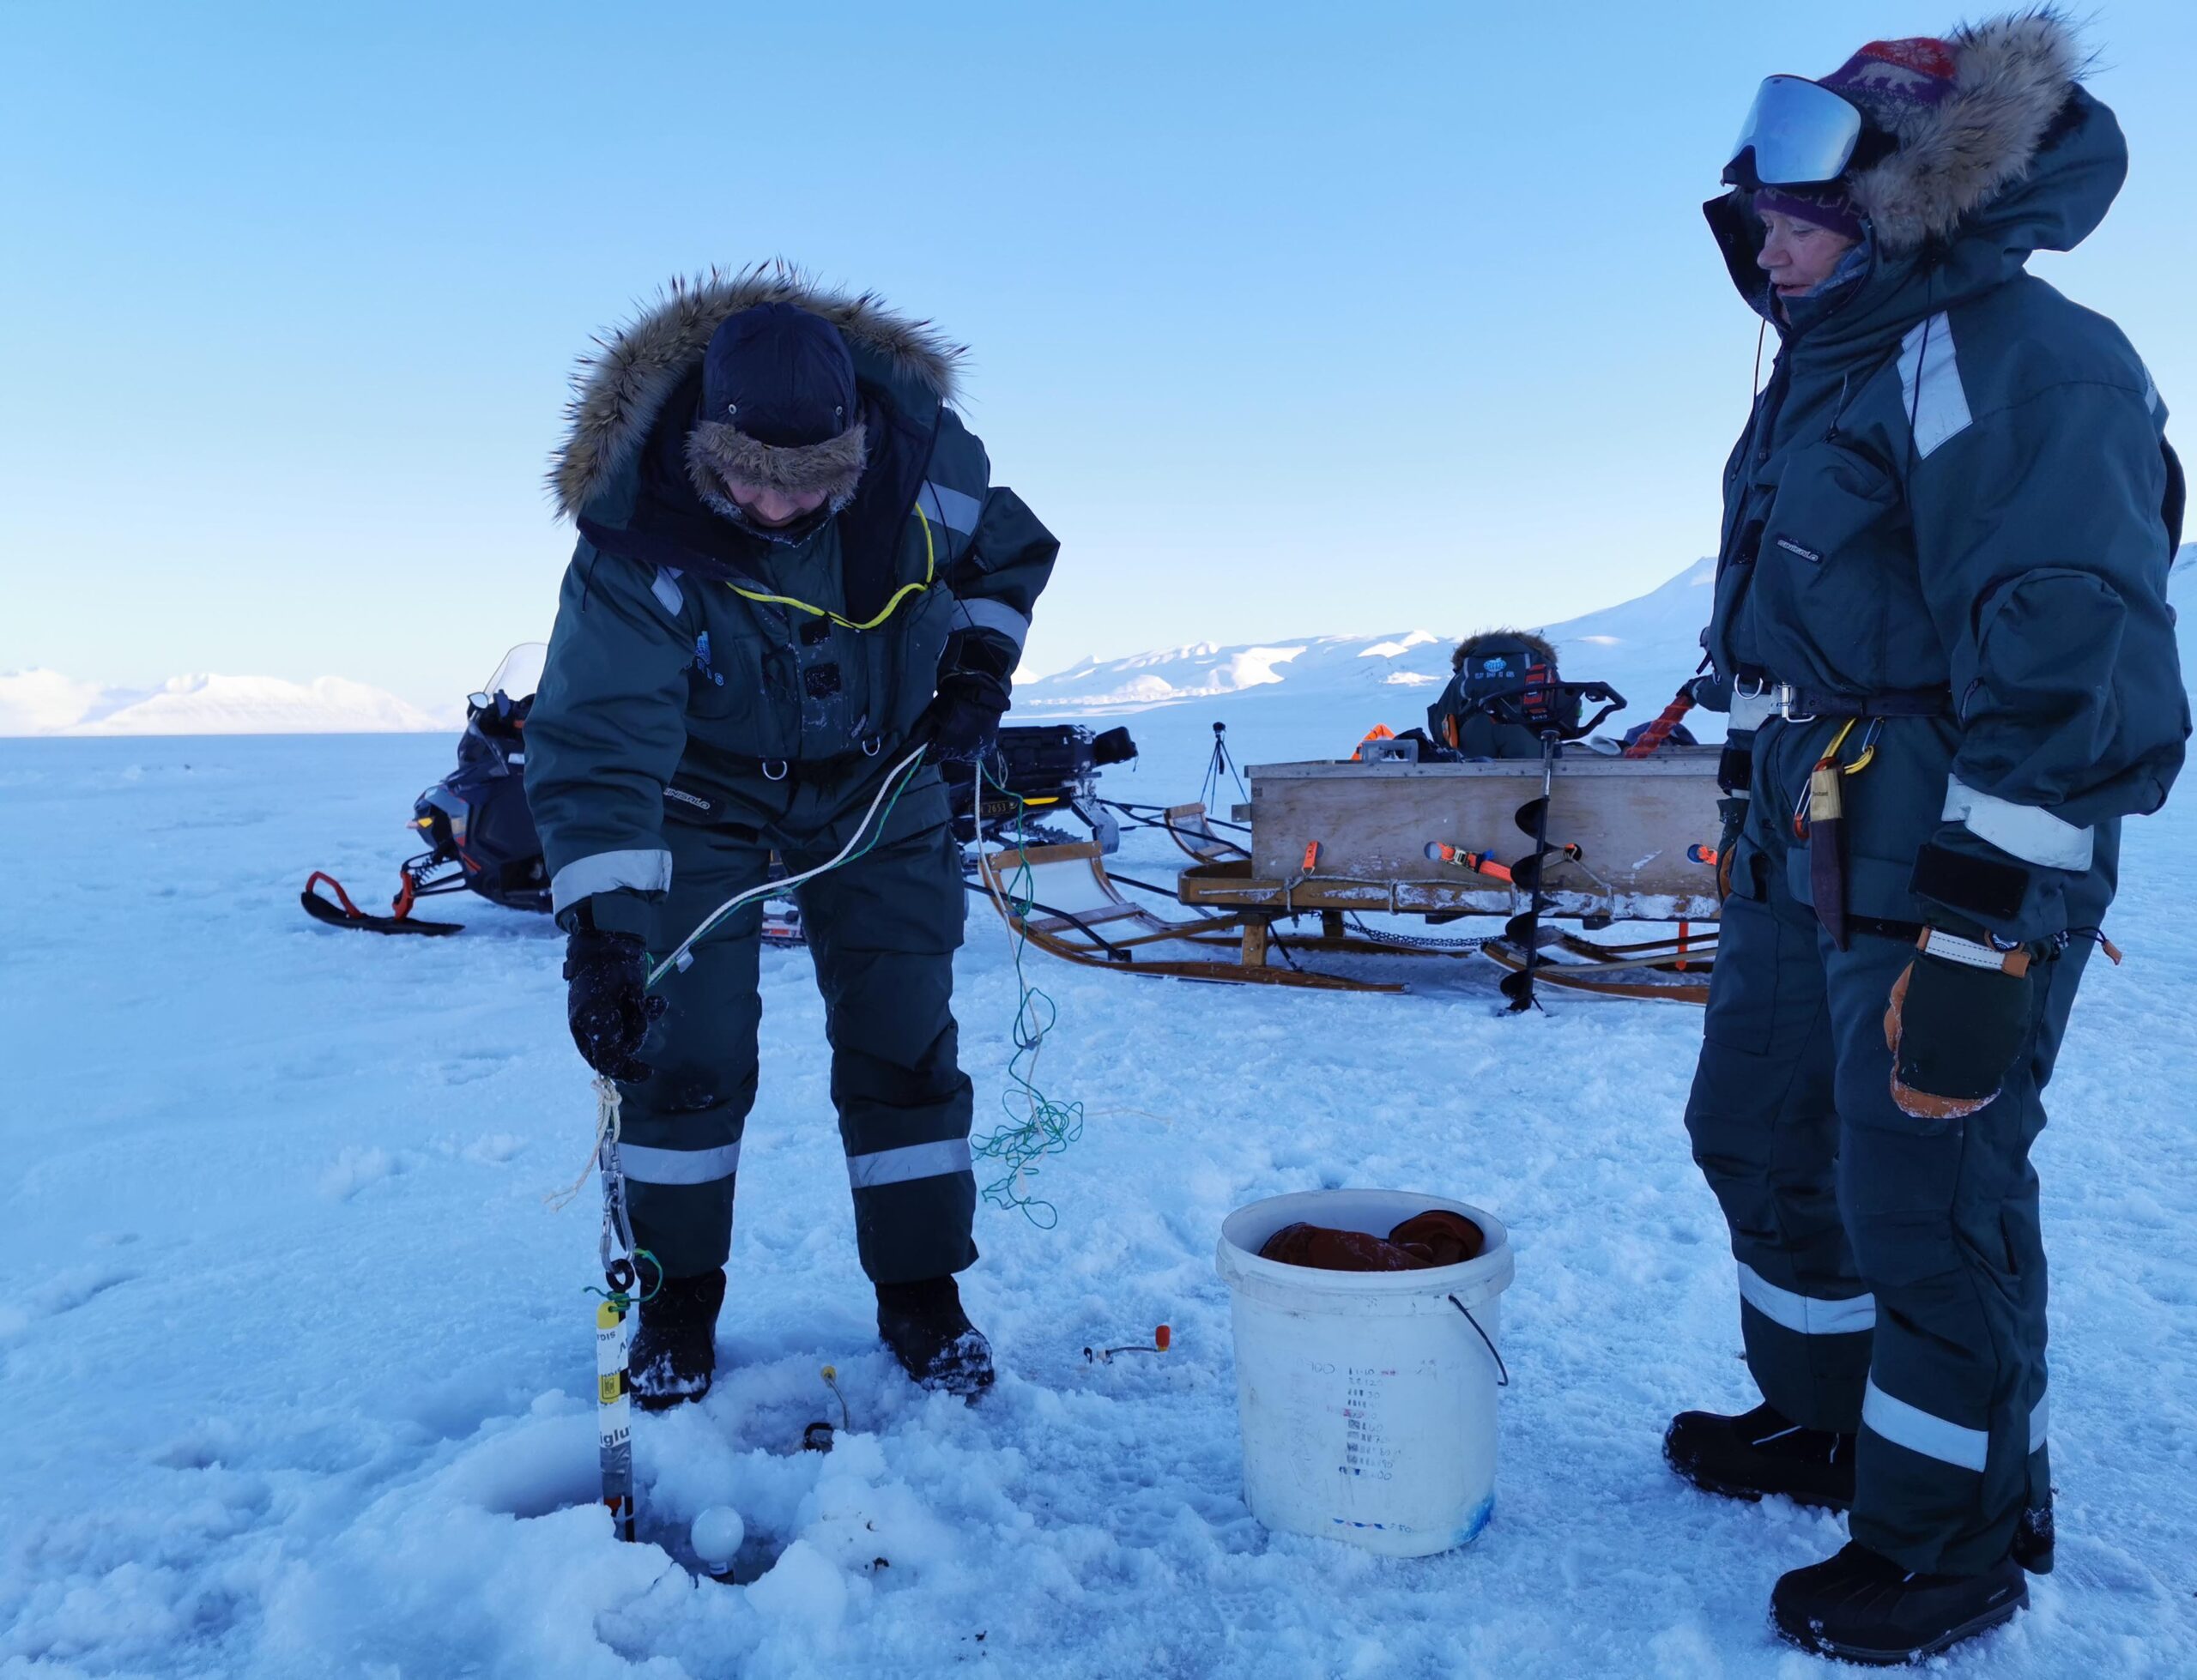 Showing Bamsebu ladies how to take ice cores